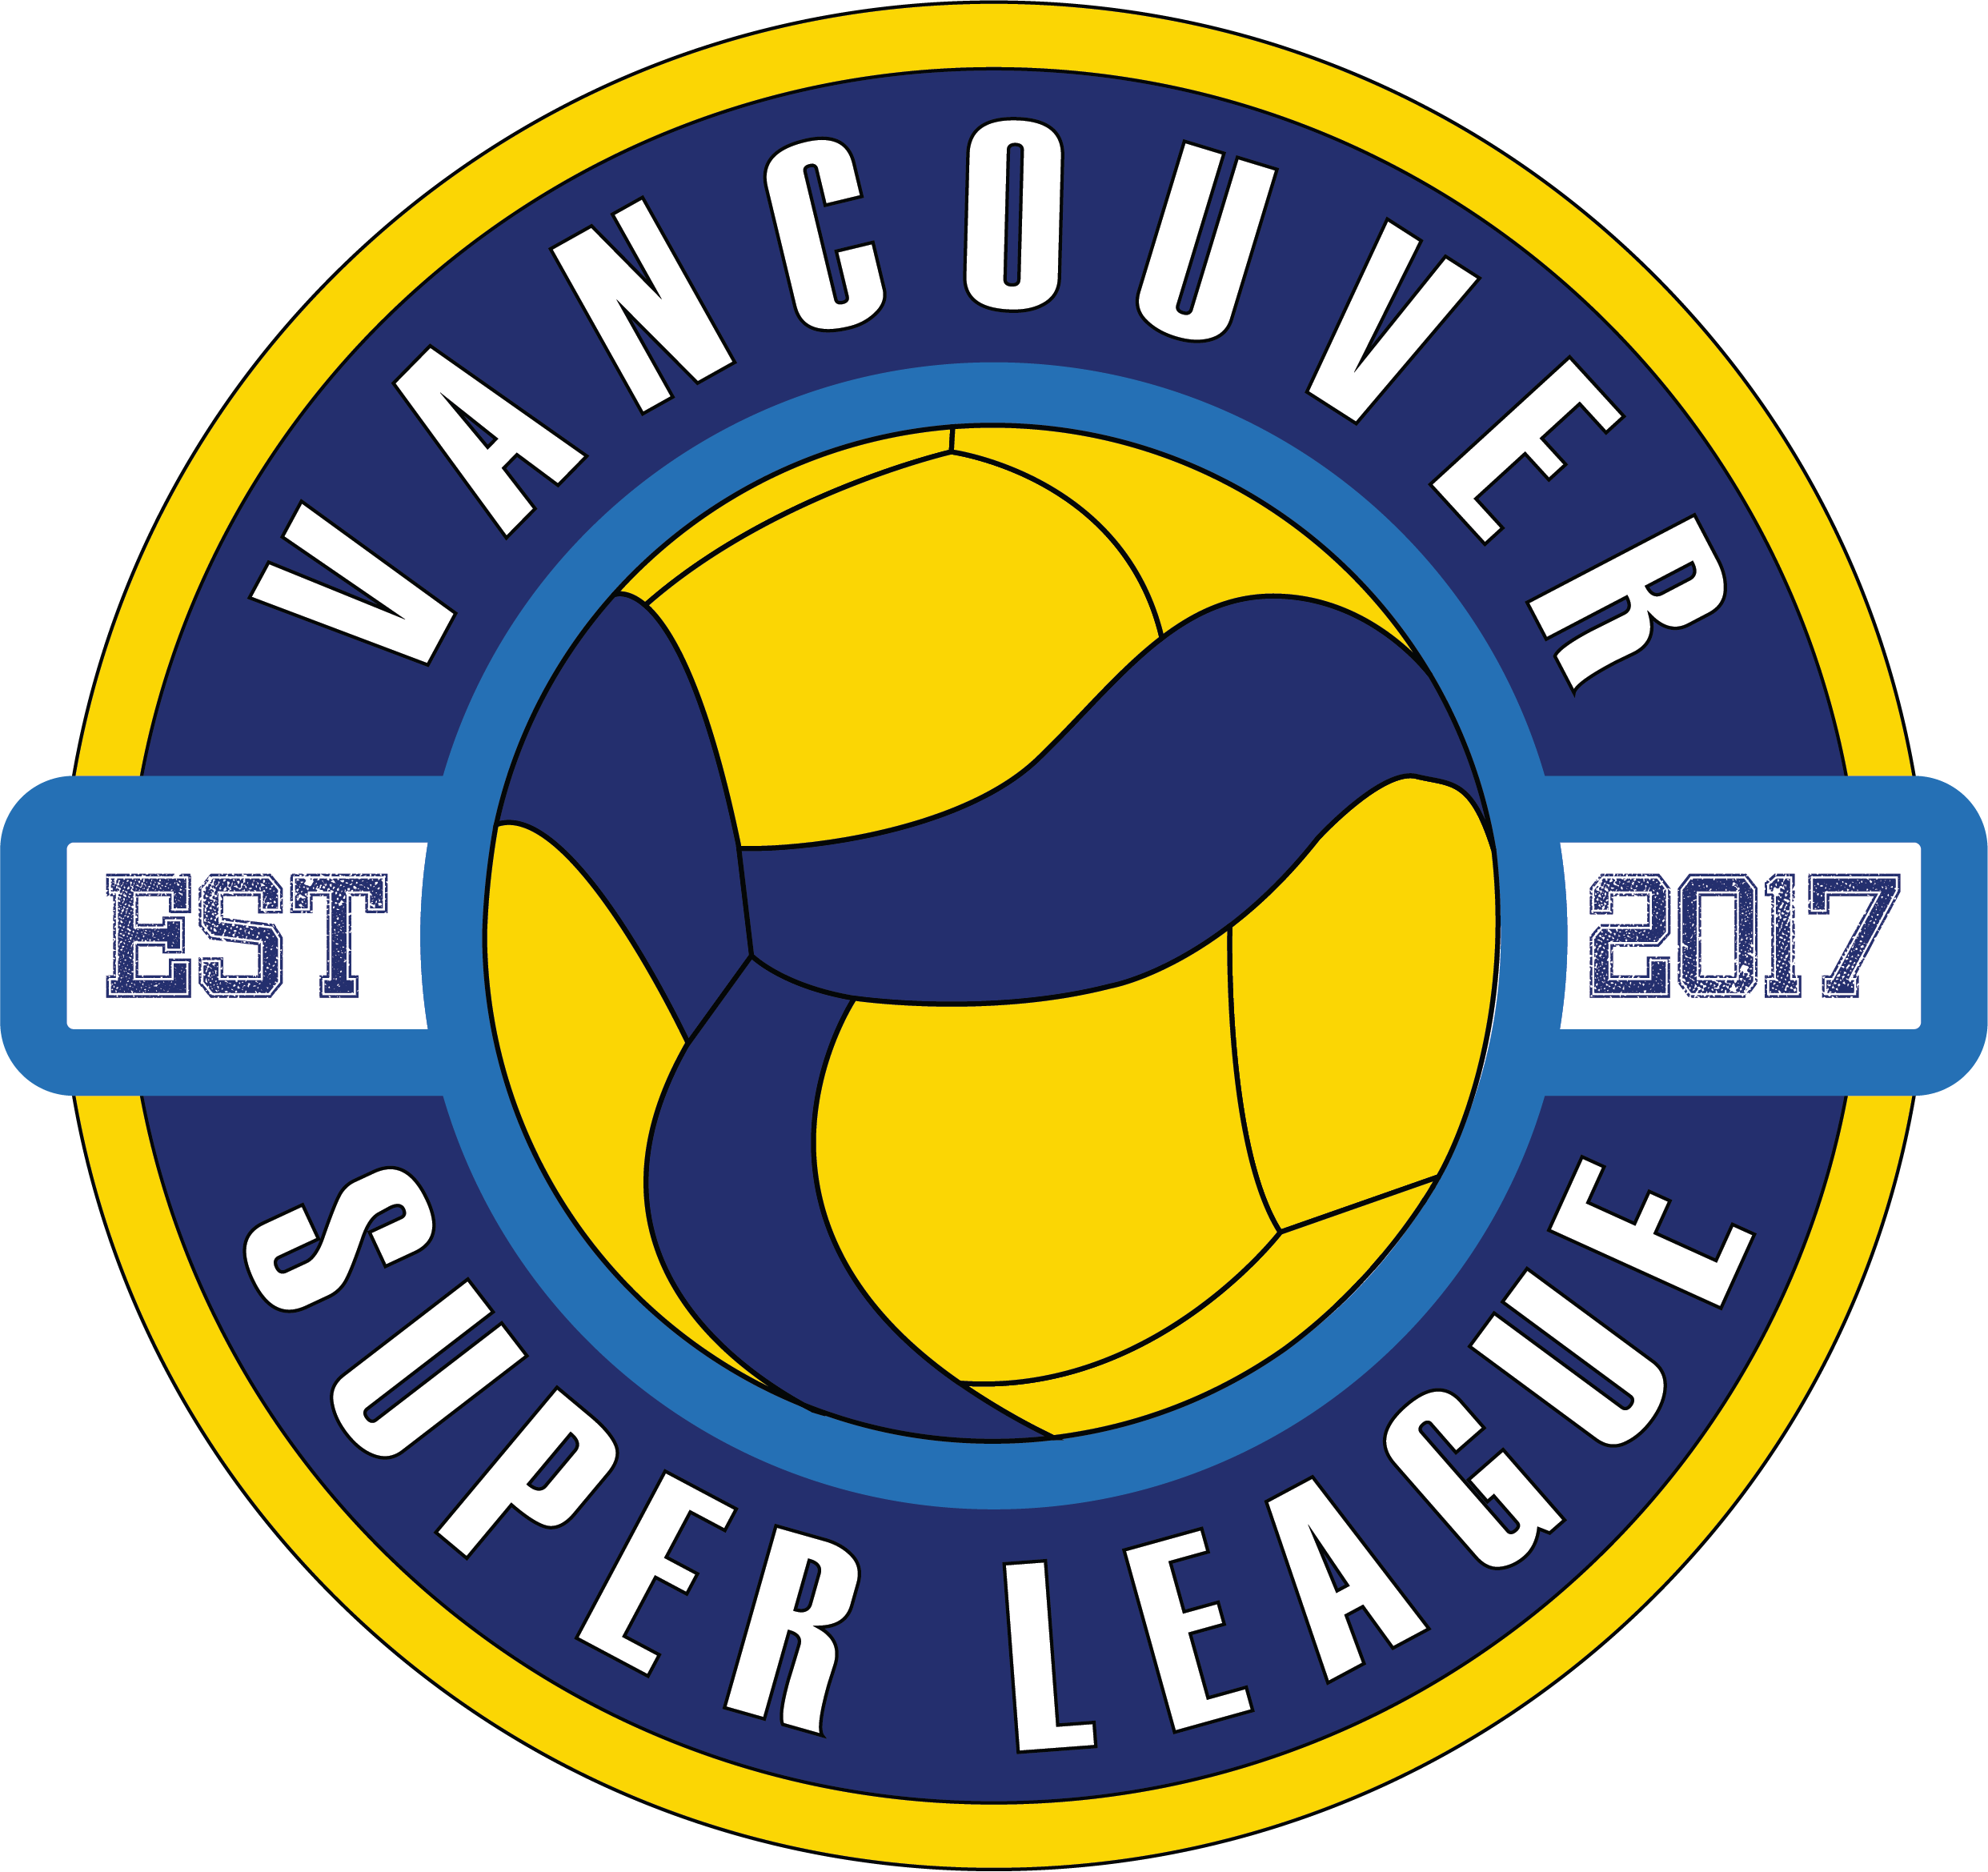 Vancouver Super League